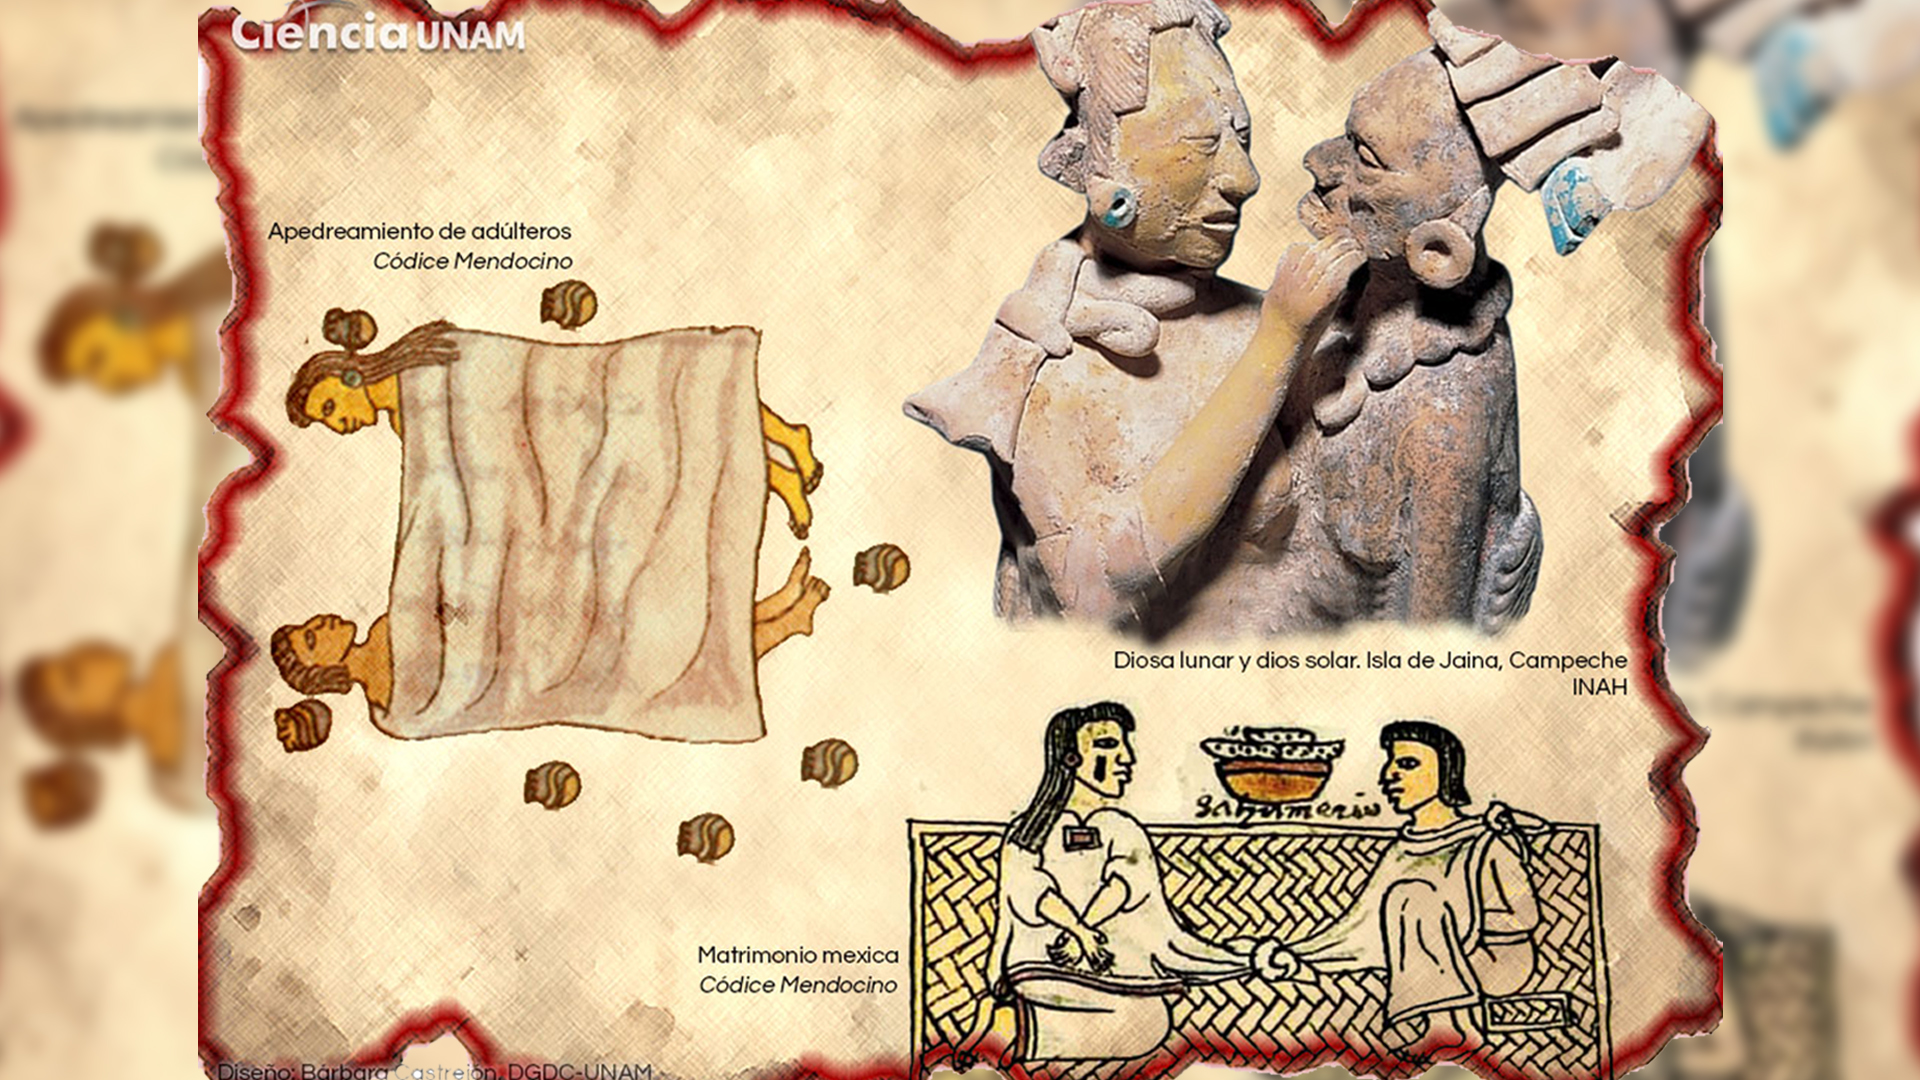 En la época de los mexicas habían deidades que las relacionaban con el erotismo, la fertilidad y la sexualidad. (Foto: Ciencia UNAM)